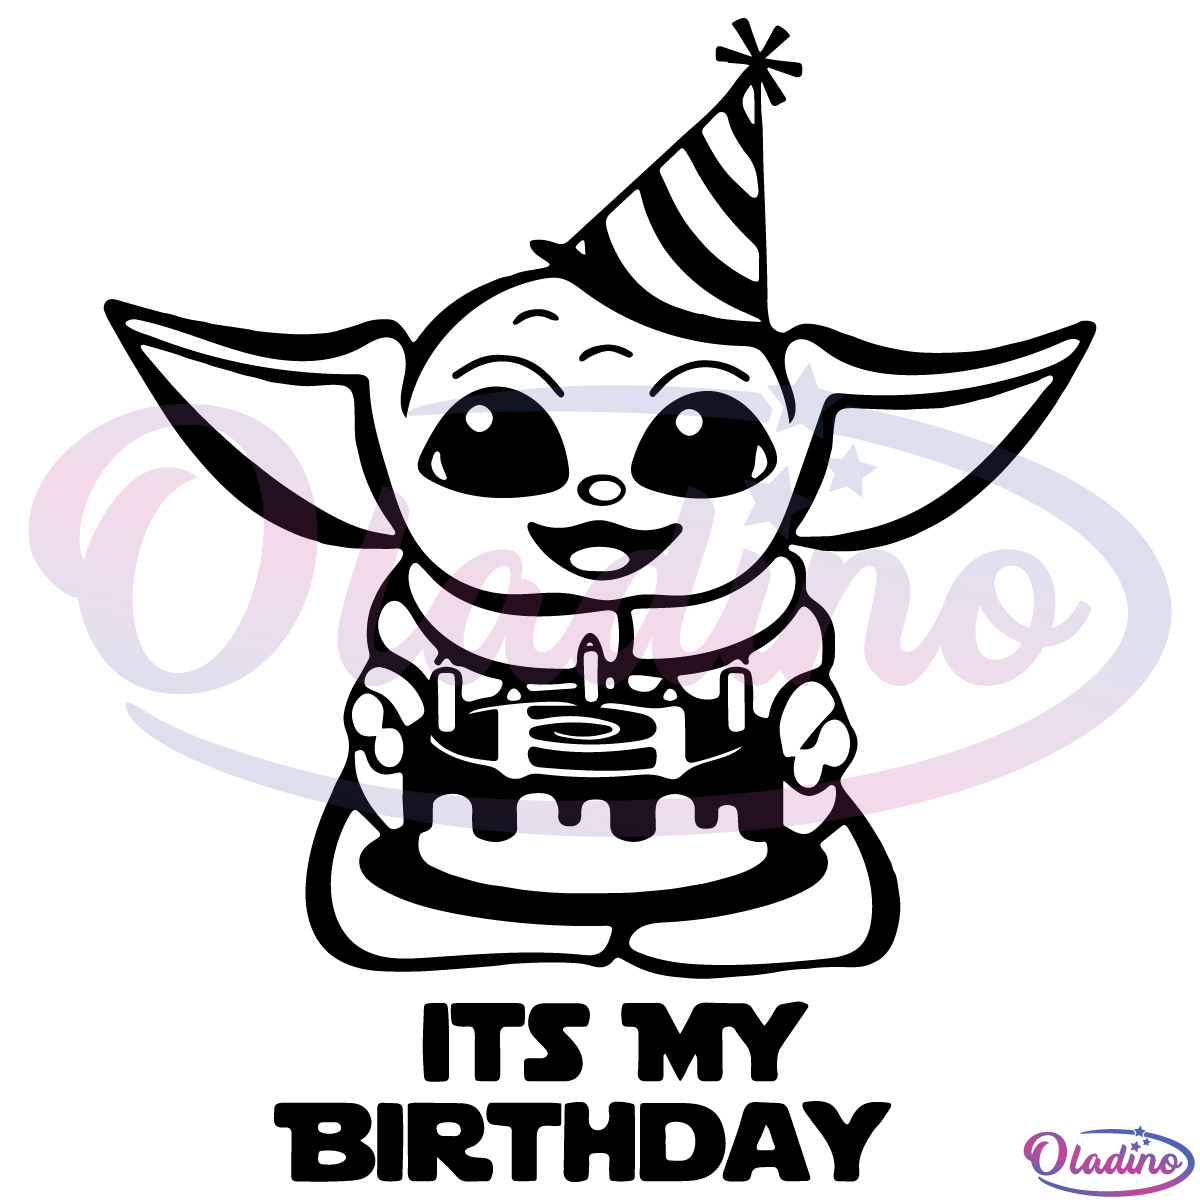 Baby Yoda Its My Birthday SVG Silhouette, Birthday Svg, Mandalorian Svg